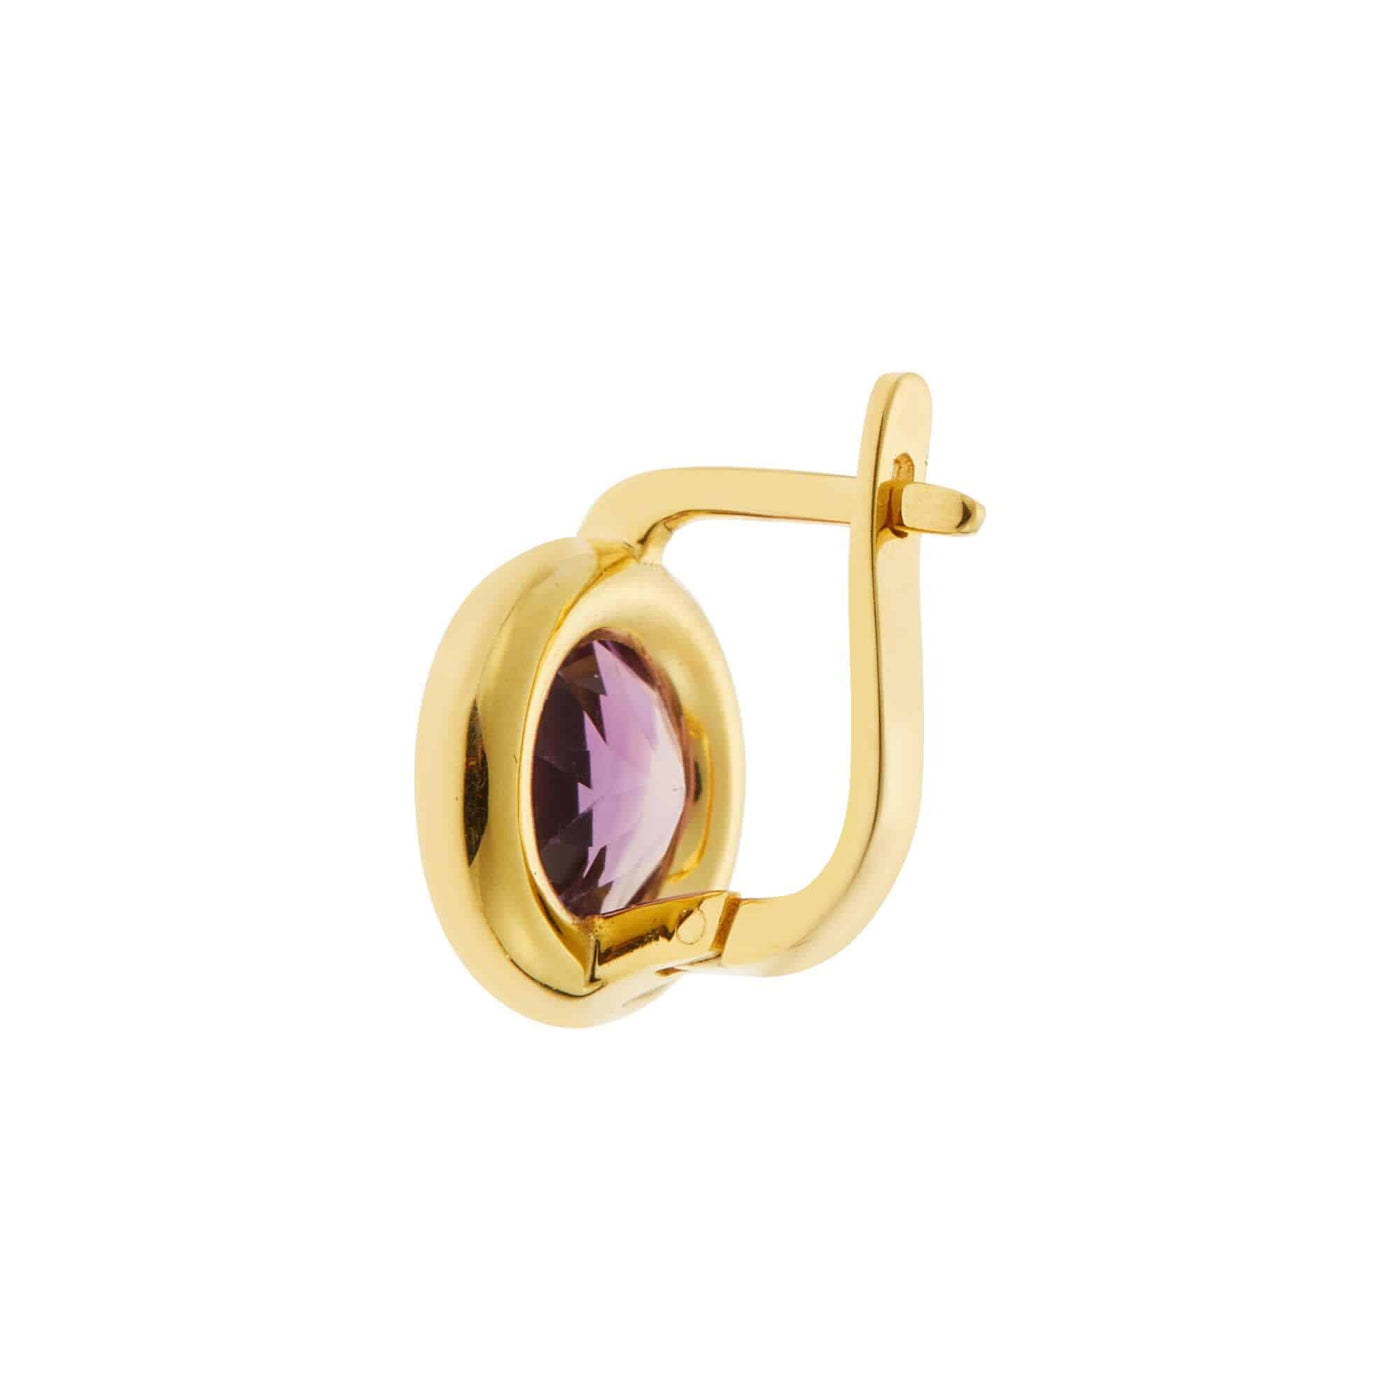 Purple Amethyst Plug Earrings - M - Exclusive - Ileana Makri store